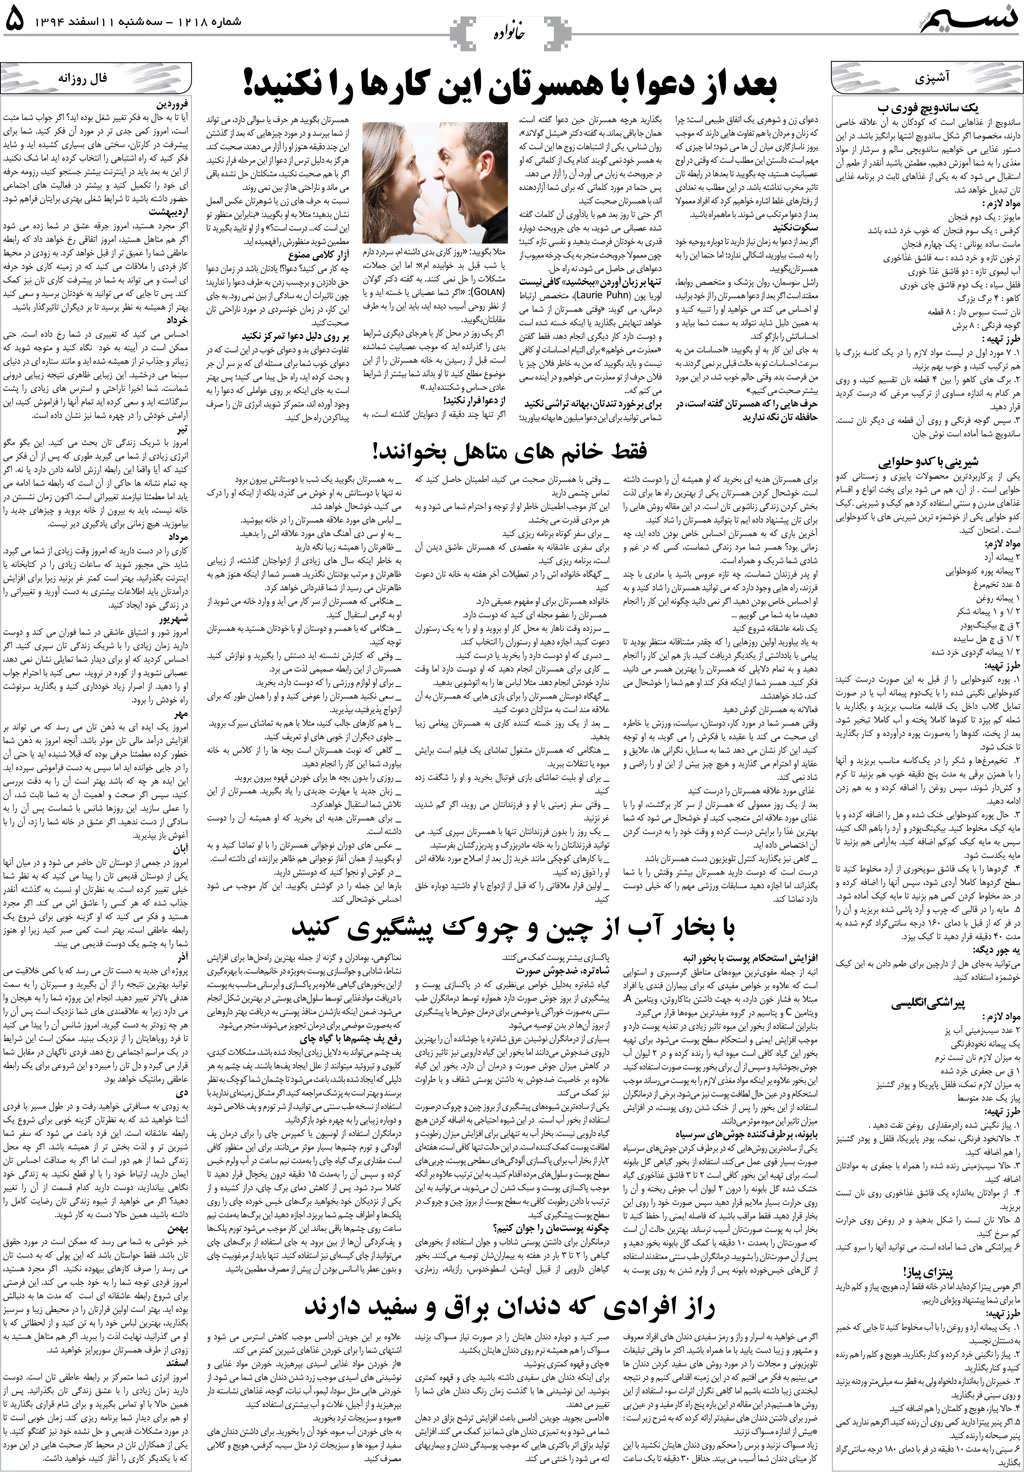 صفحه خانواده روزنامه نسیم شماره 1218